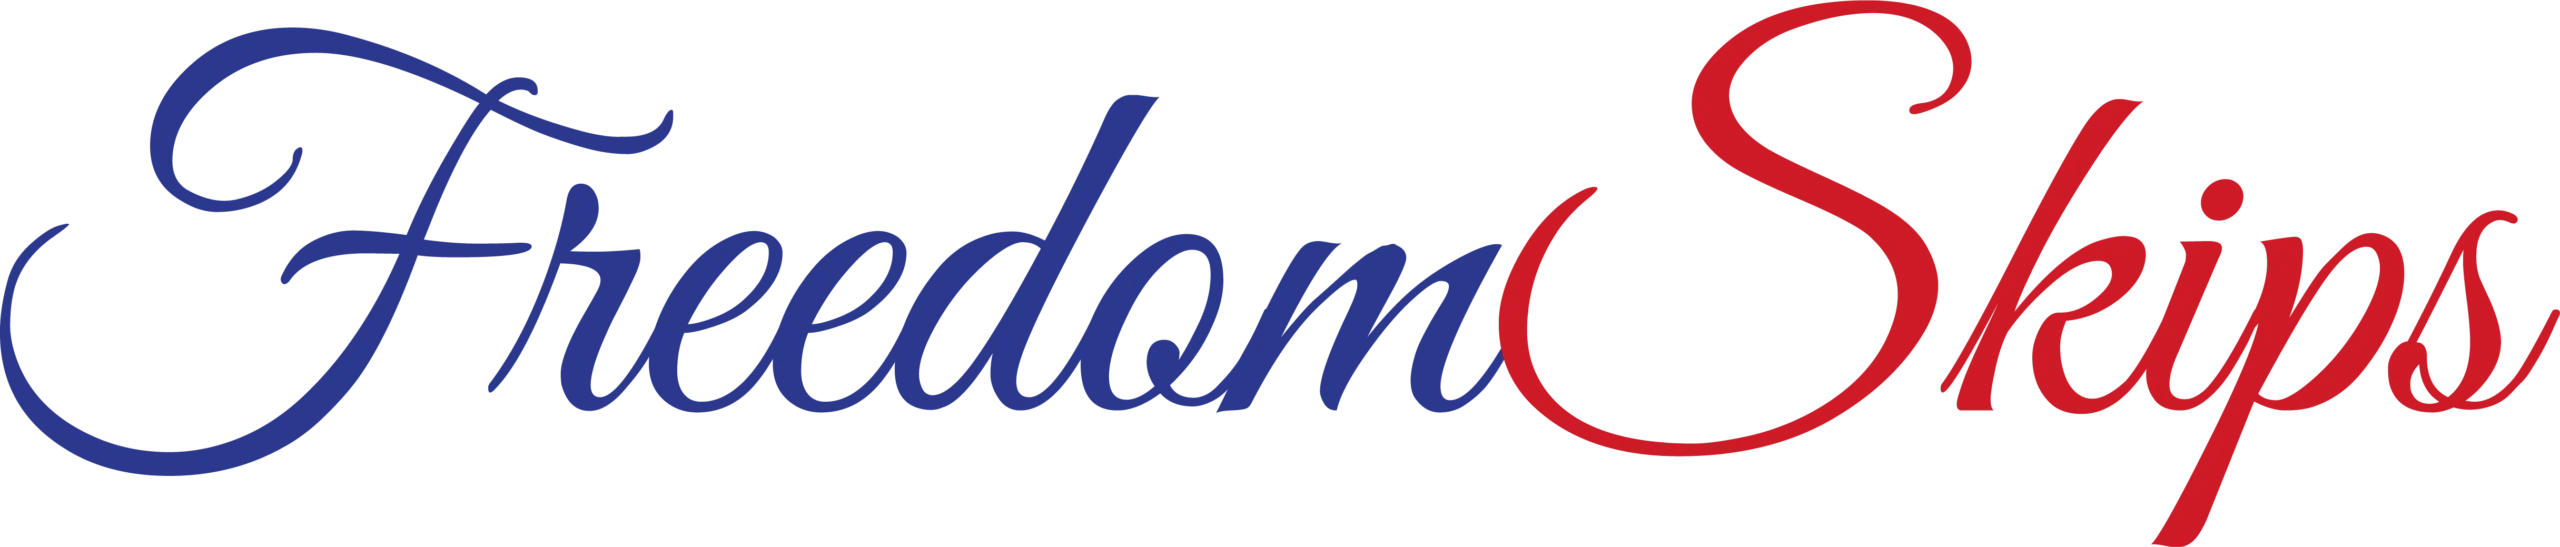 Freedom Skips Logo